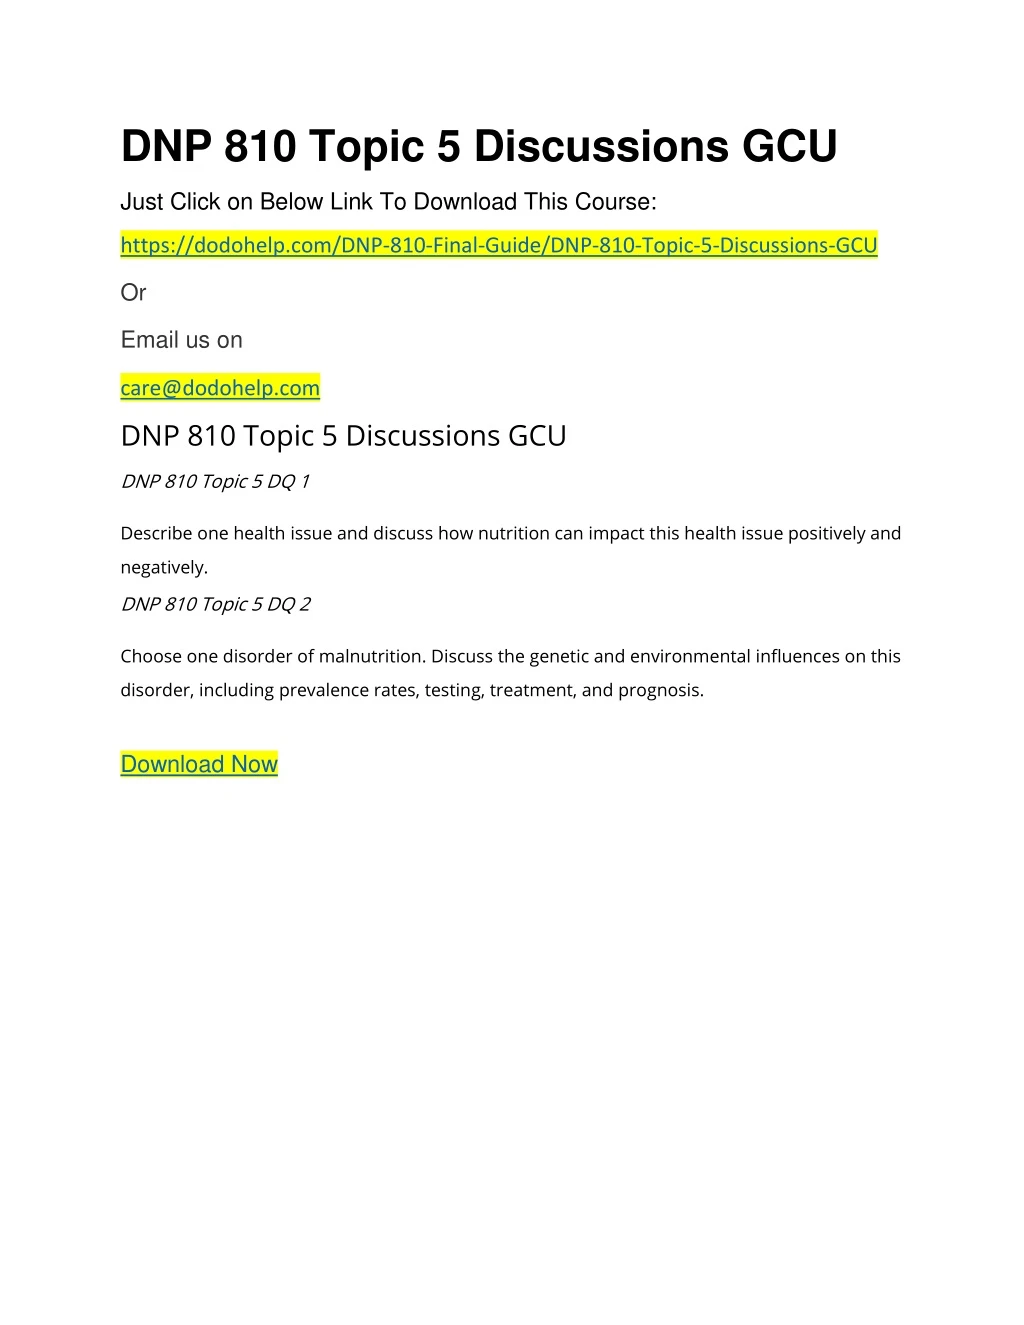 dnp 810 topic 5 discussions gcu